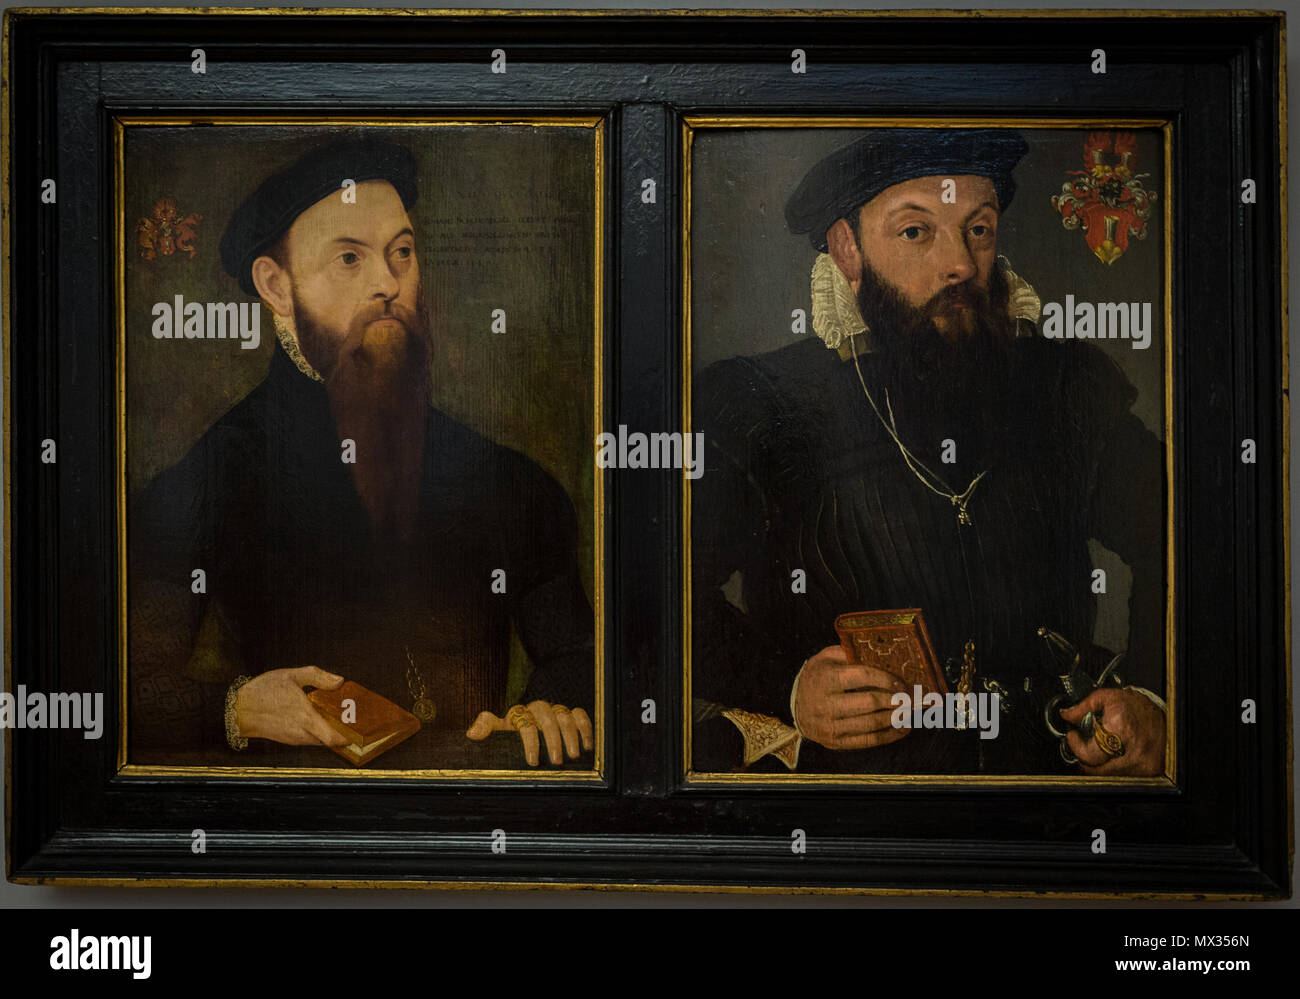 . Français: Jean Schenckbecher. Deux portraits à l'huile sur Bois réunis dans un Cadre länglich. Celui de gauche a été Peint en 1557 à Lübeck, selon l'Inschrift: Iohan (NES) SCHENCKBECHER, ILLUST (RIS) PRINC (ipis) IO (annis) ALB (erti) MEGAPOLENSIUM DUCIS SECRETARIUS AETAT (ist) SUAE 28 LUBECAE 1557'. Il porte La entwickeln HABEN LIS QVOD POSSIS", avec les Armoiries. Celui de droite, anonyme, Représente le même personnage à un plus âge Avancé. Une Kopie ancienne agrandie de ce Portrait se trouve dans la salle Capiton. Posten du Chapitre de Saint-Thomas à Strasbourg (Salle du Chapitre). 27. Mai 2014, Stockfoto